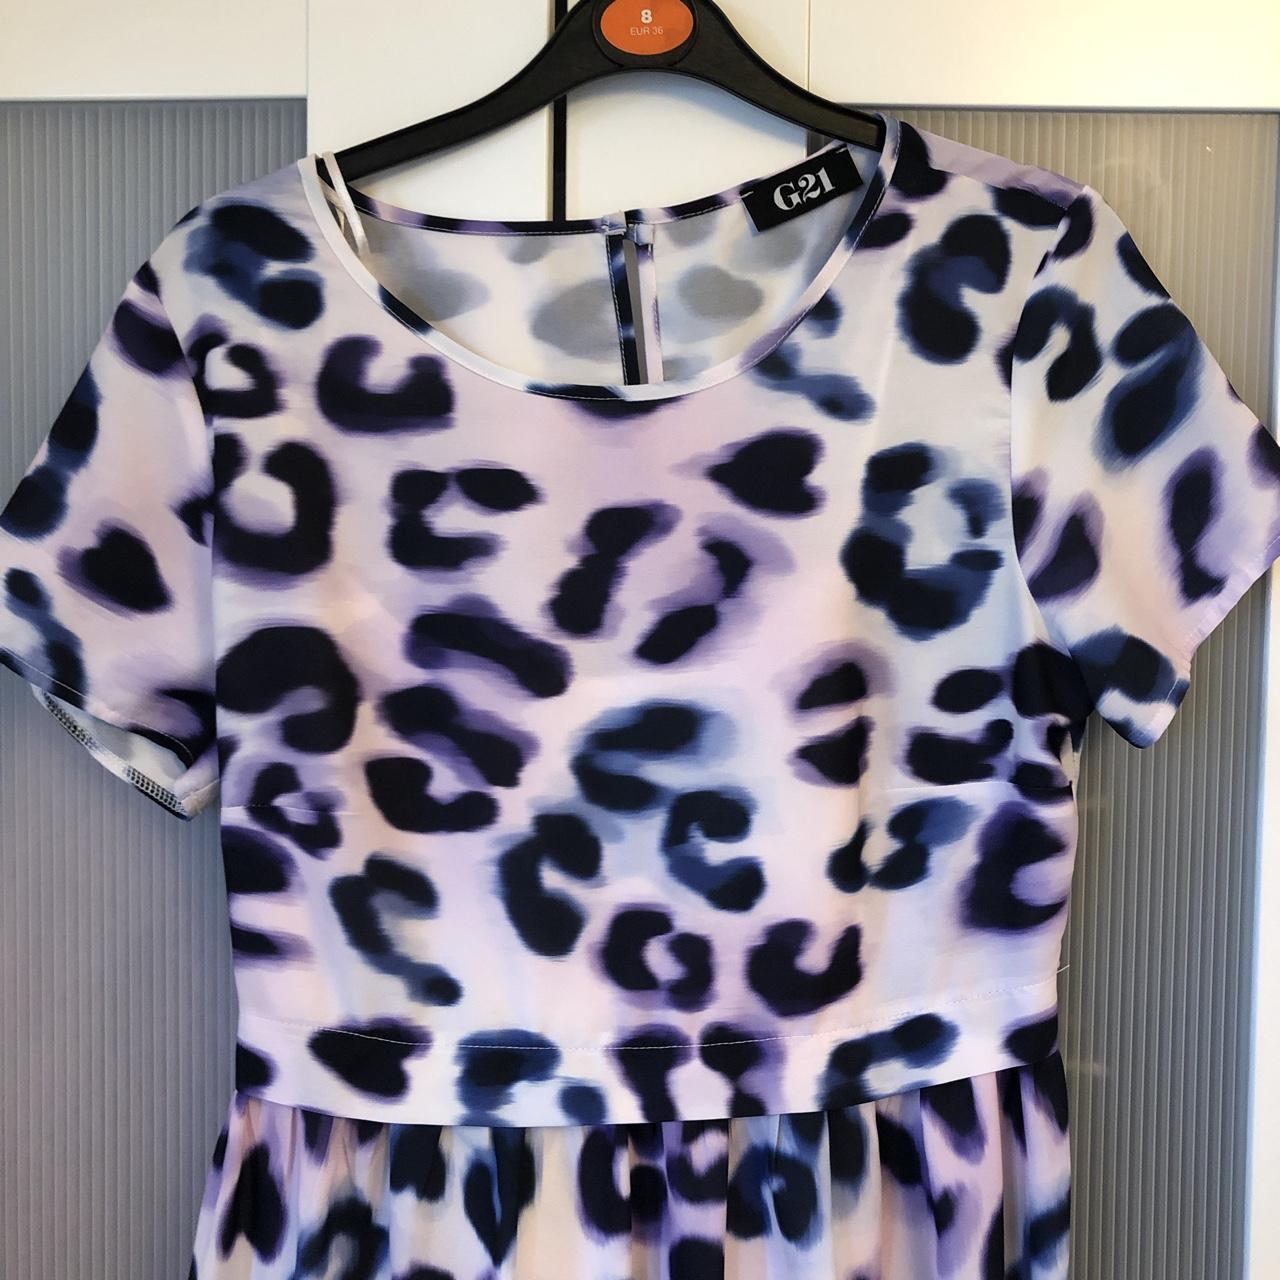 Stunning watercolour leopard print skater dress. A... - Depop